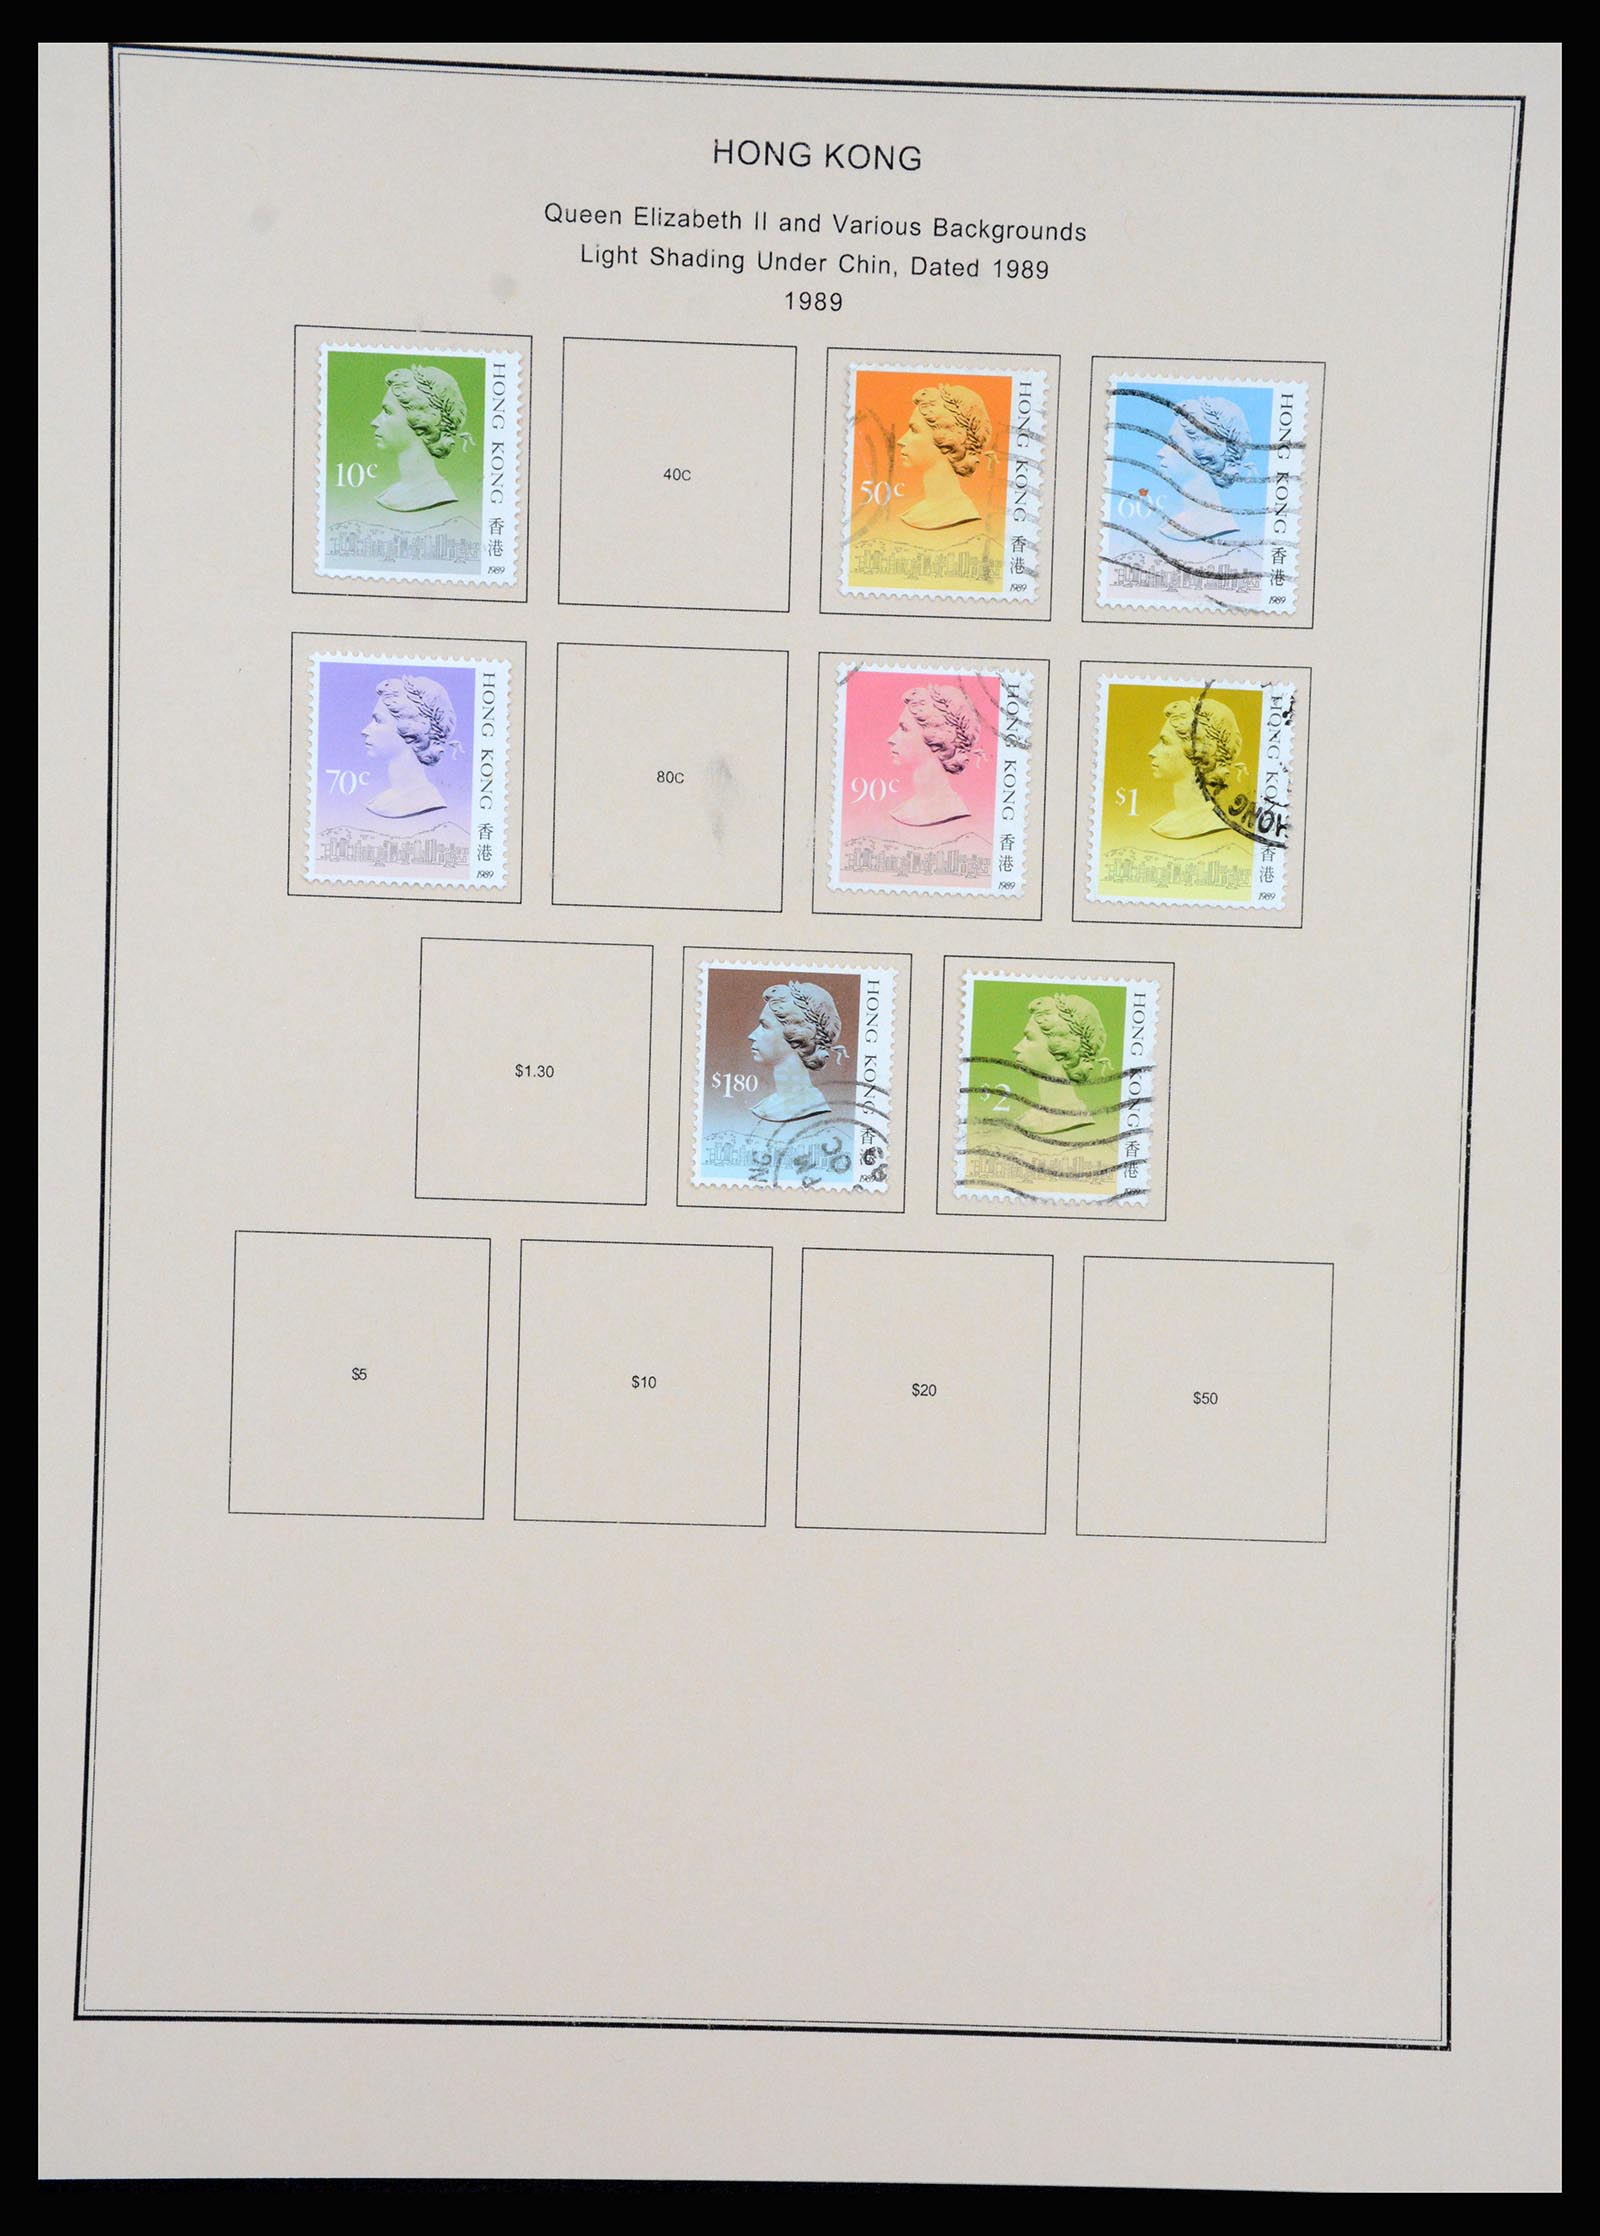 37210 062 - Stamp collection 37210 Hong Kong 1862-2000.